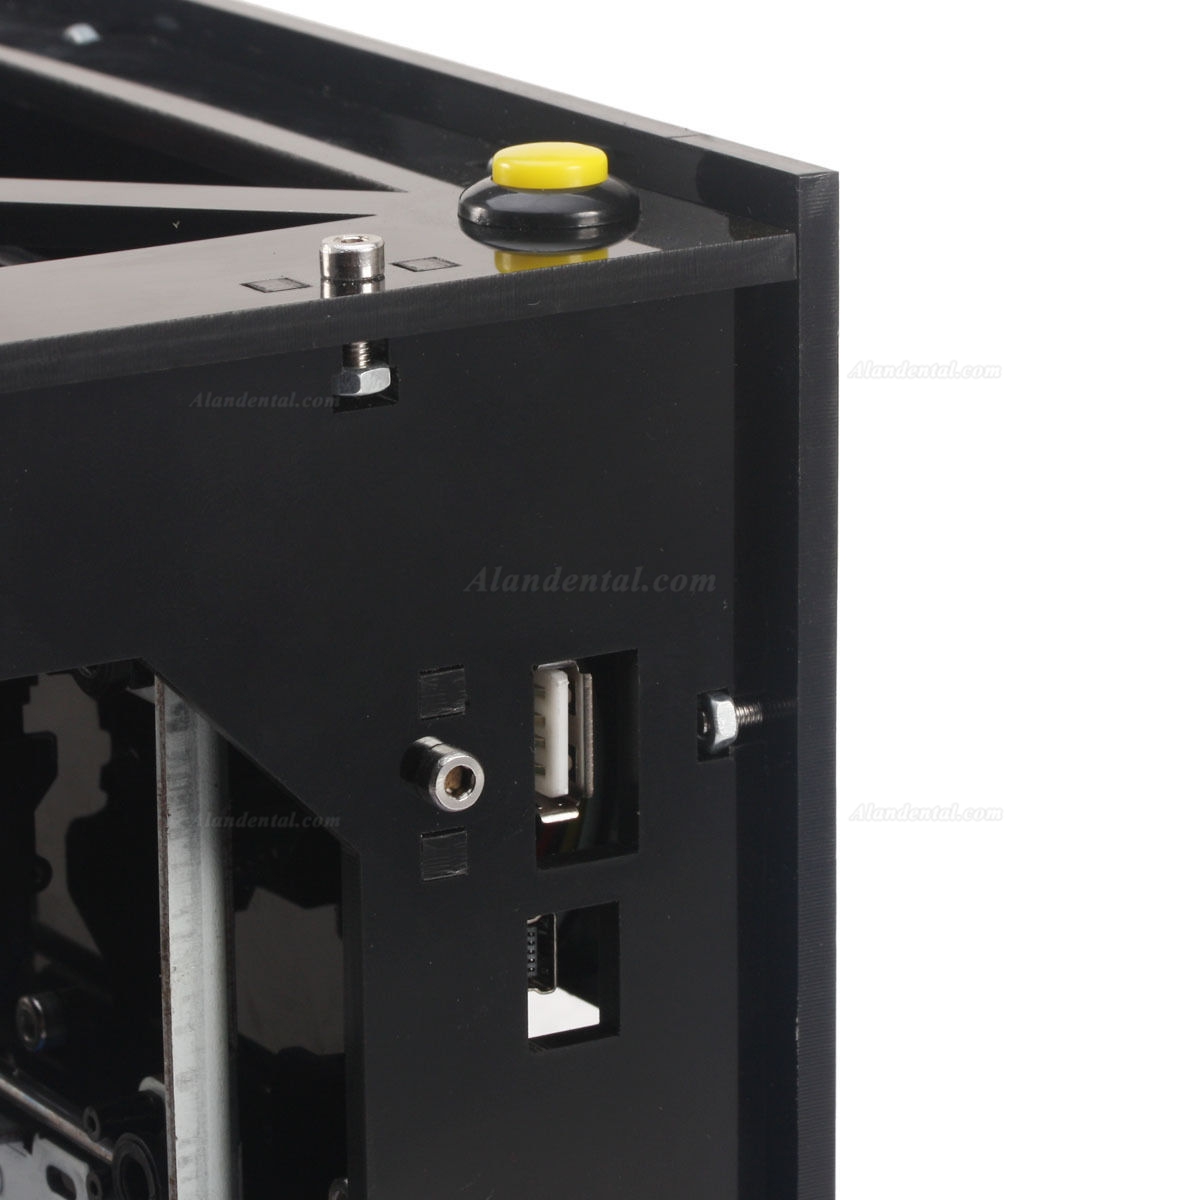 NEJE DIY 500mW USB Laser Printer Engraver Cutter Laser Engraving Cutting Machine